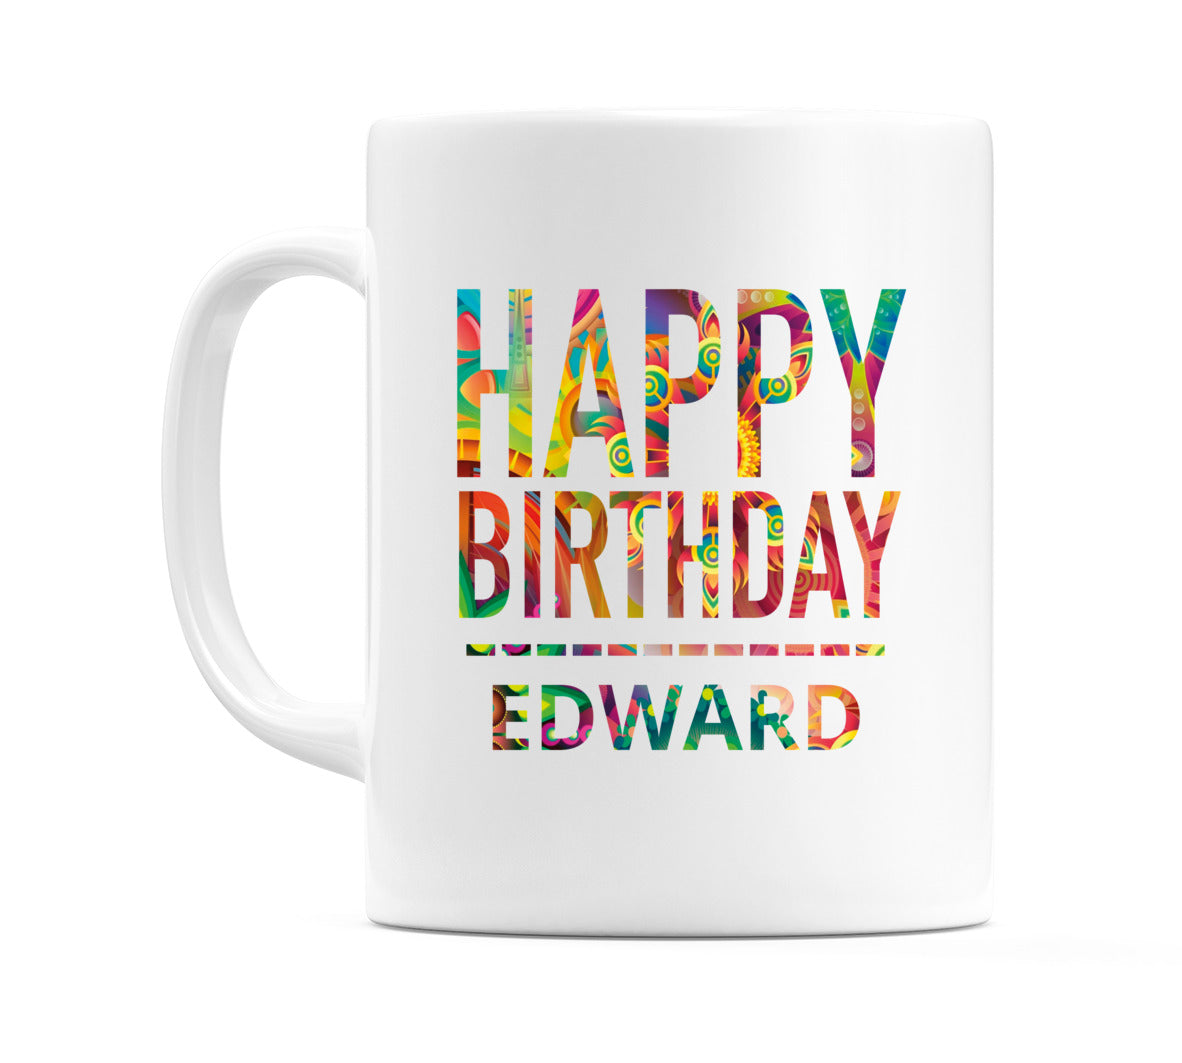 Happy Birthday Edward (Tie Dye Effect) Mug Cup by WeDoMugs